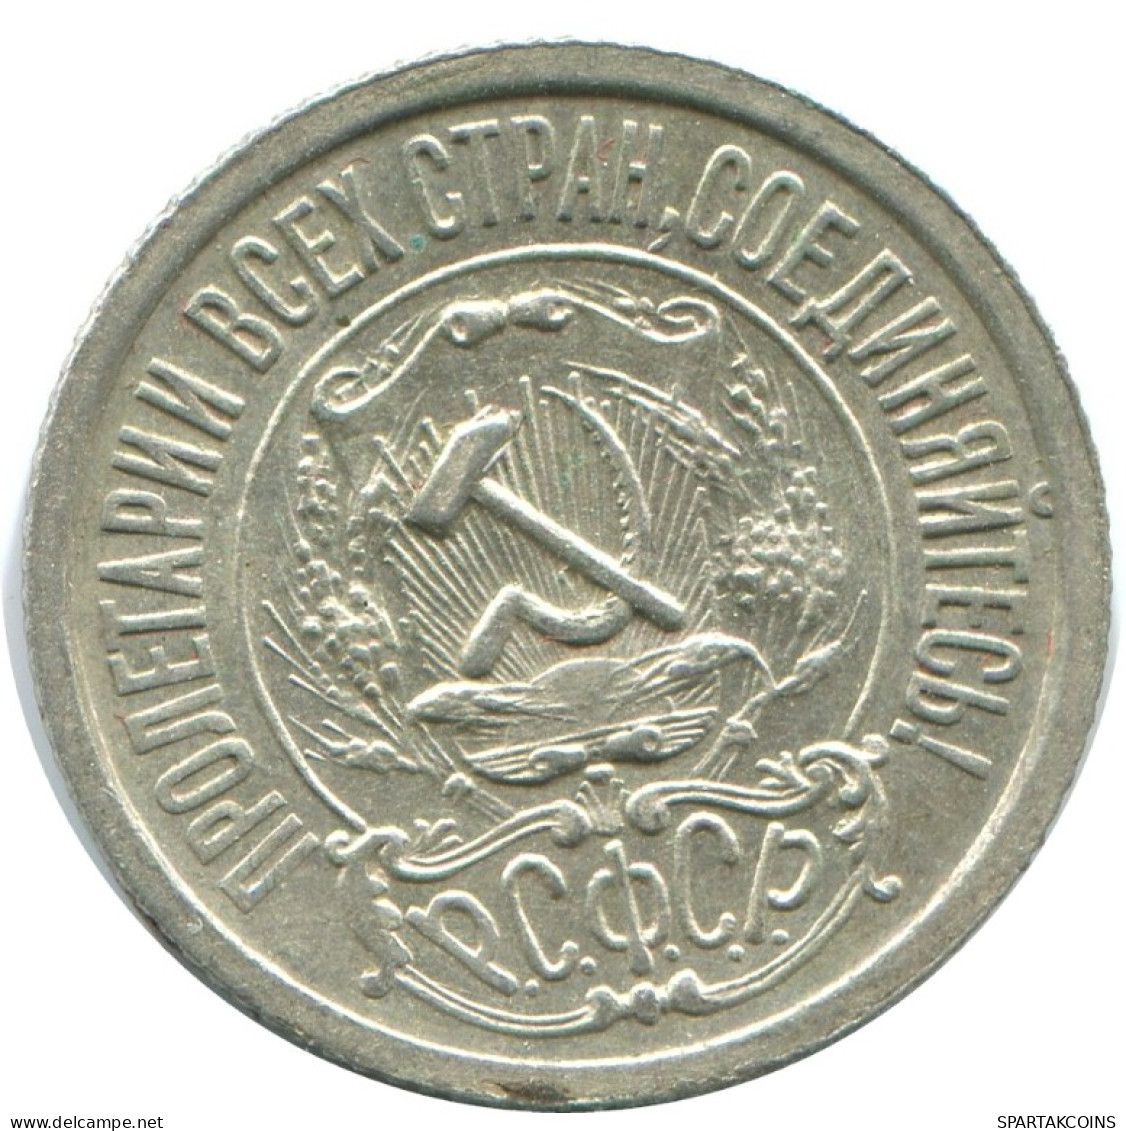 15 KOPEKS 1922 RUSSIA RSFSR SILVER Coin HIGH GRADE #AF204.4.U.A - Rusland